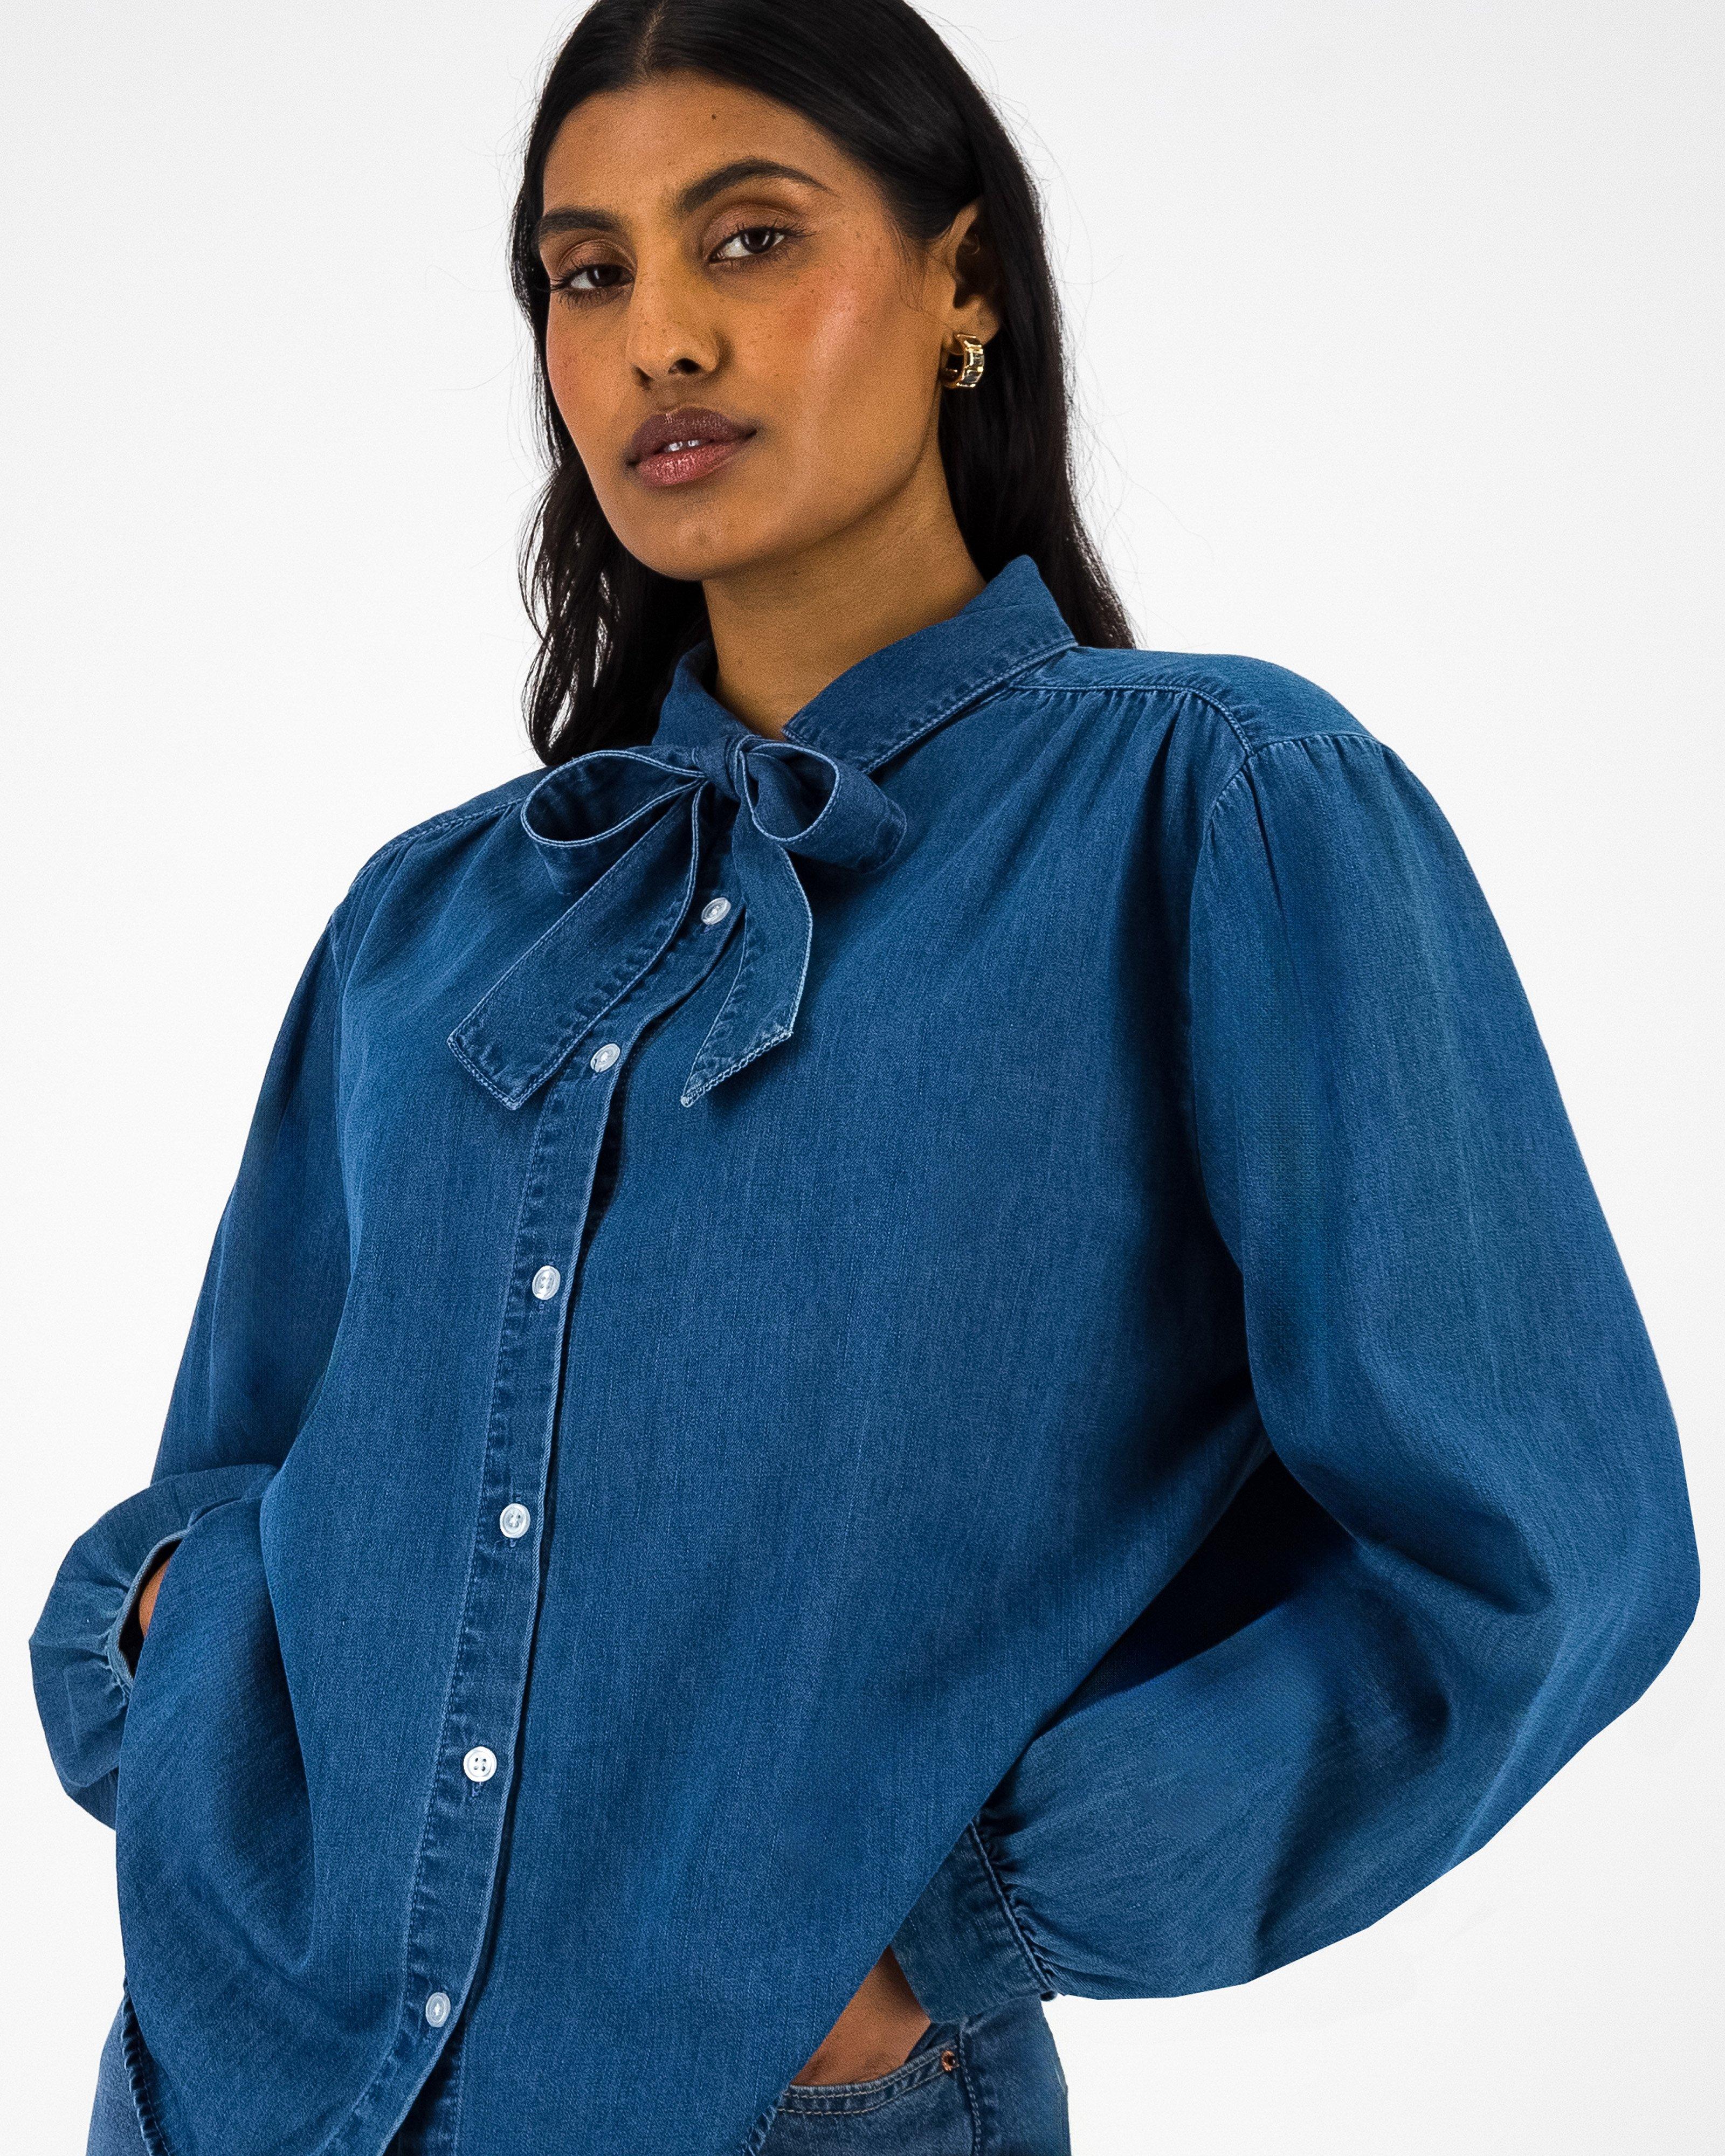 Zuria Denim Shirt -  Mid Blue